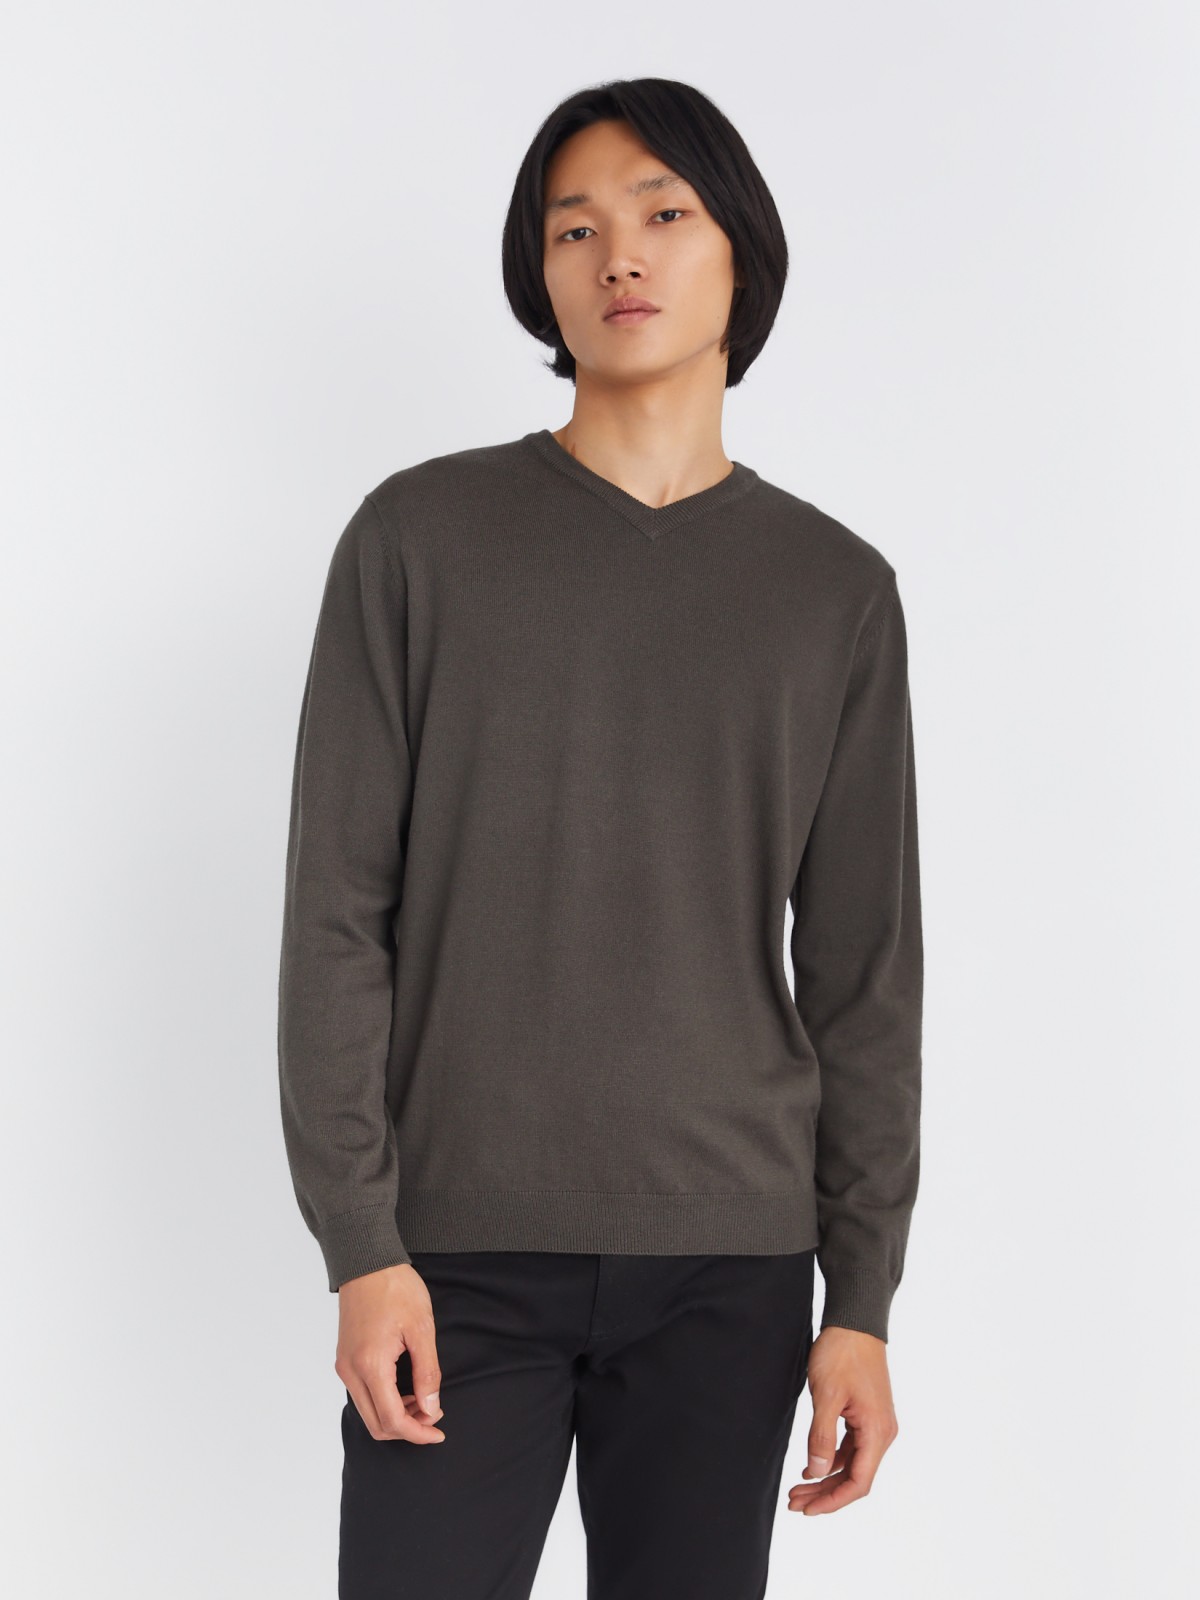 Шерстяной трикотажный пуловер с треугольным вырезом и длинным рукавом zolla 013346163042, цвет темно-серый, размер M - фото 4